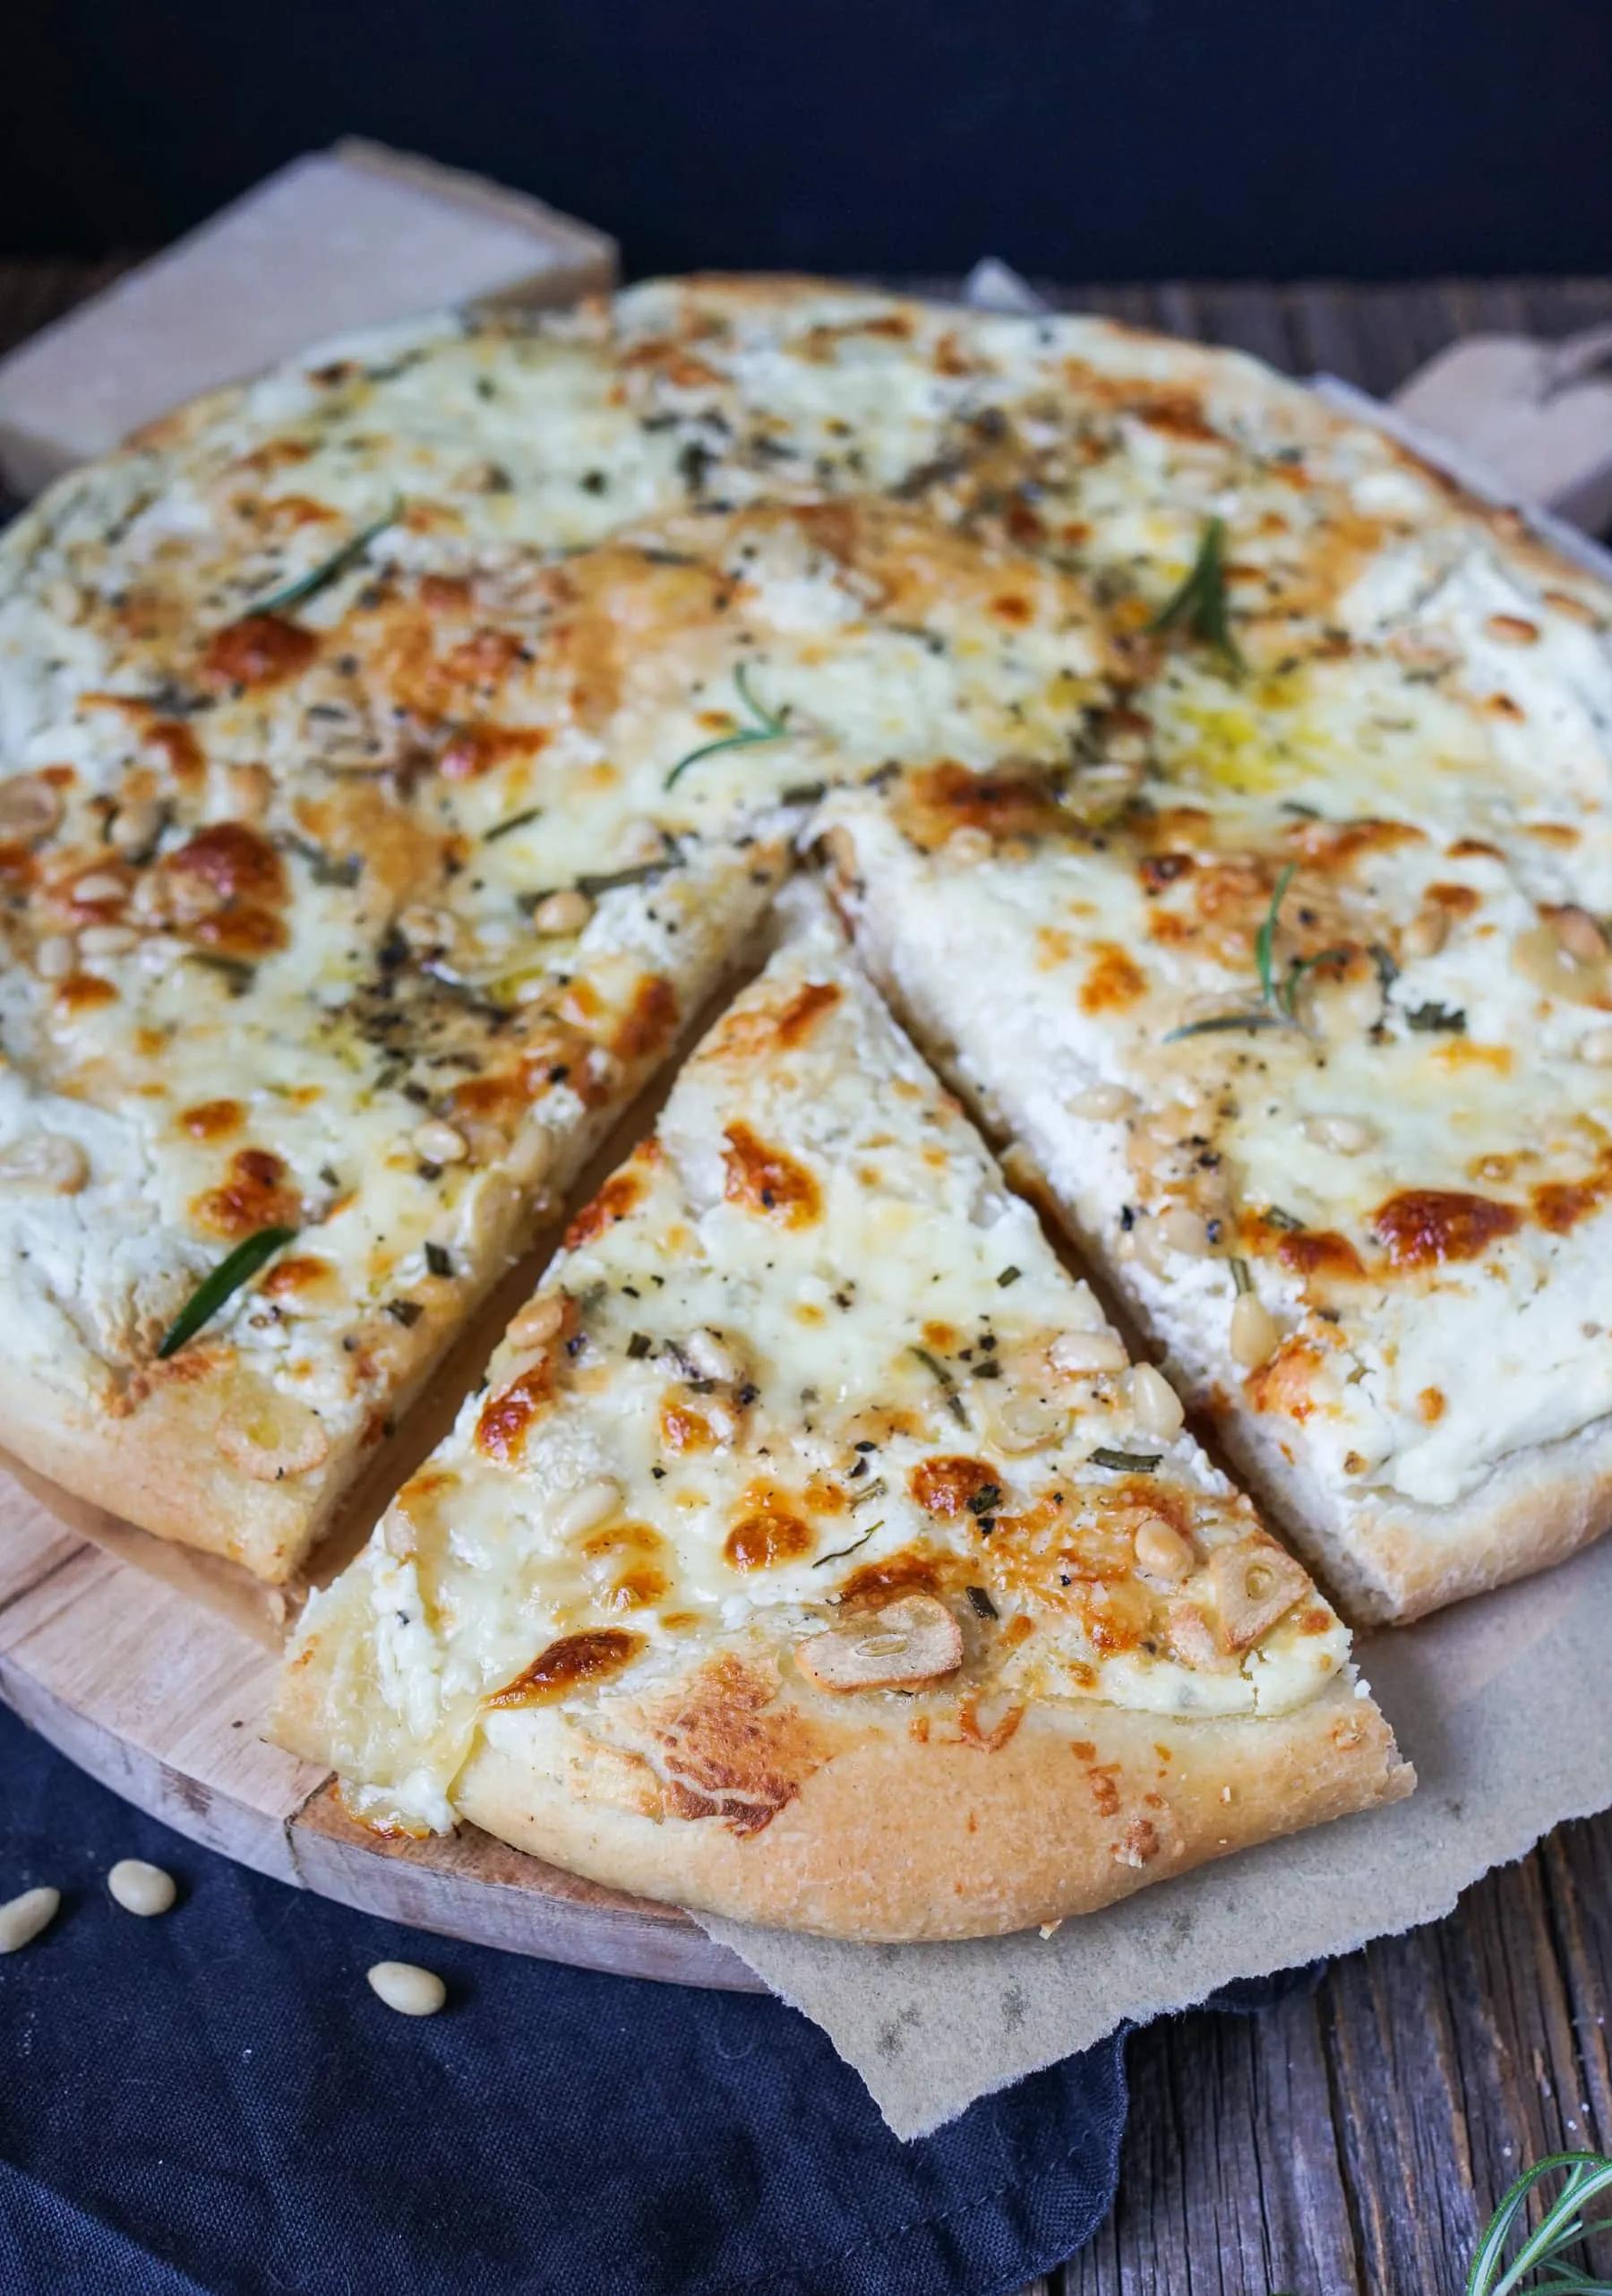 Pizza bianca mit Ricotta, Rosmarin und Knoblauch | Was is hier ...